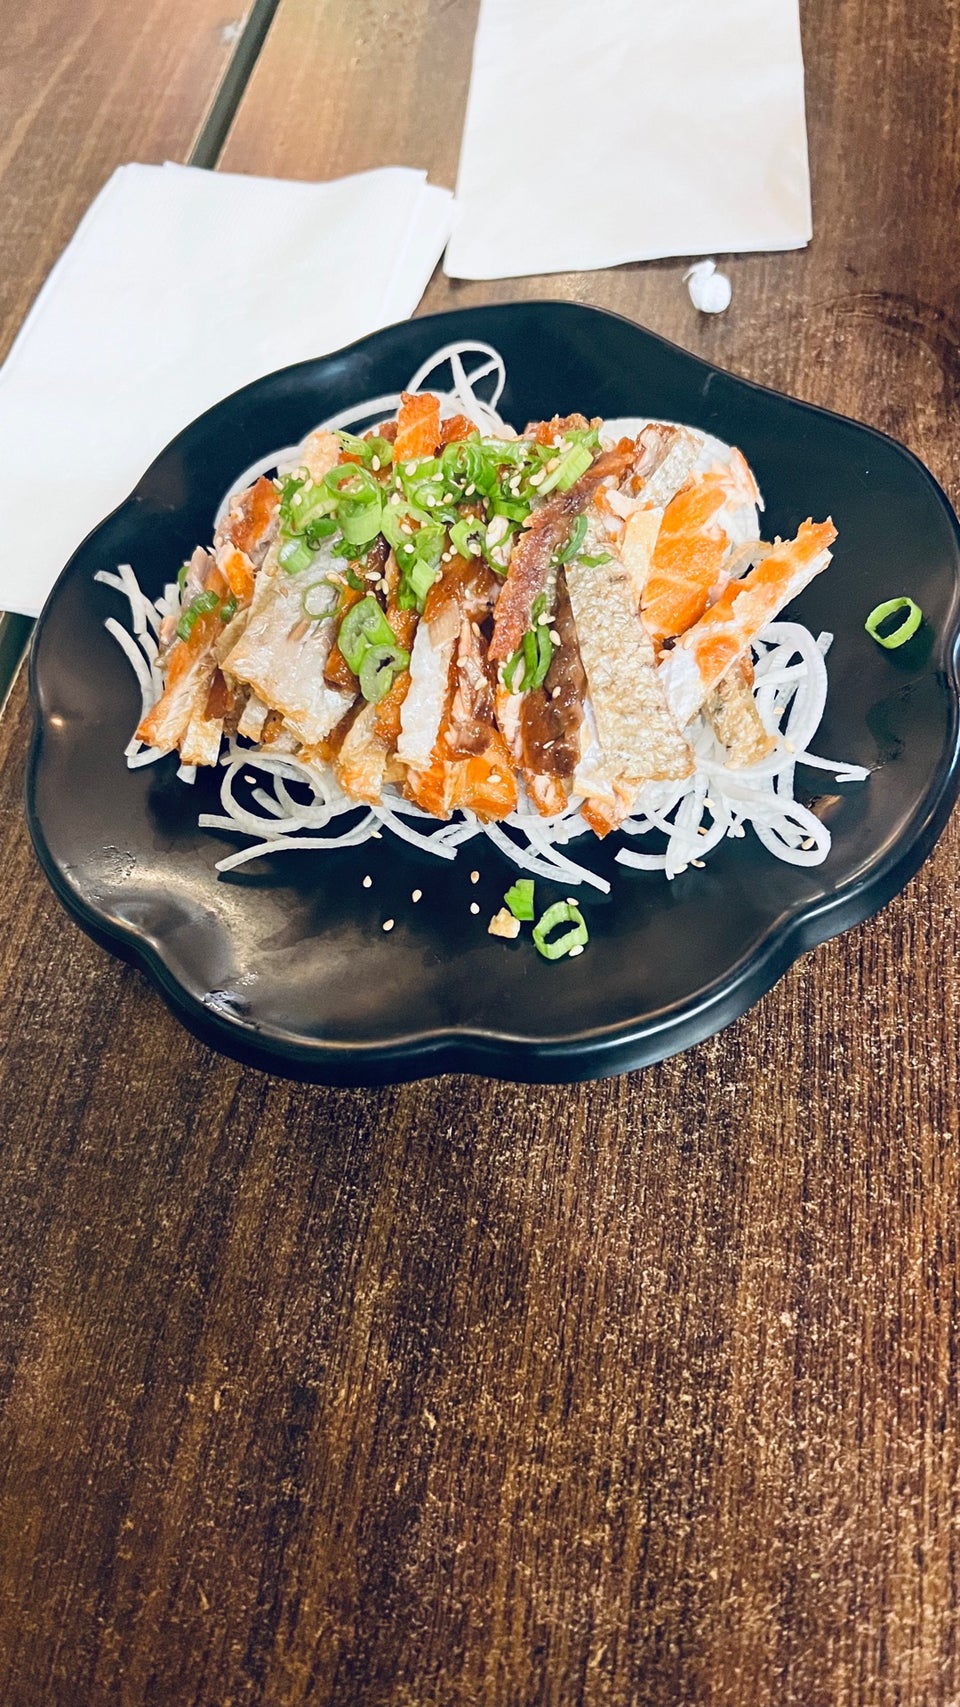 Godai Sushi Bar & Japanese Restaurant